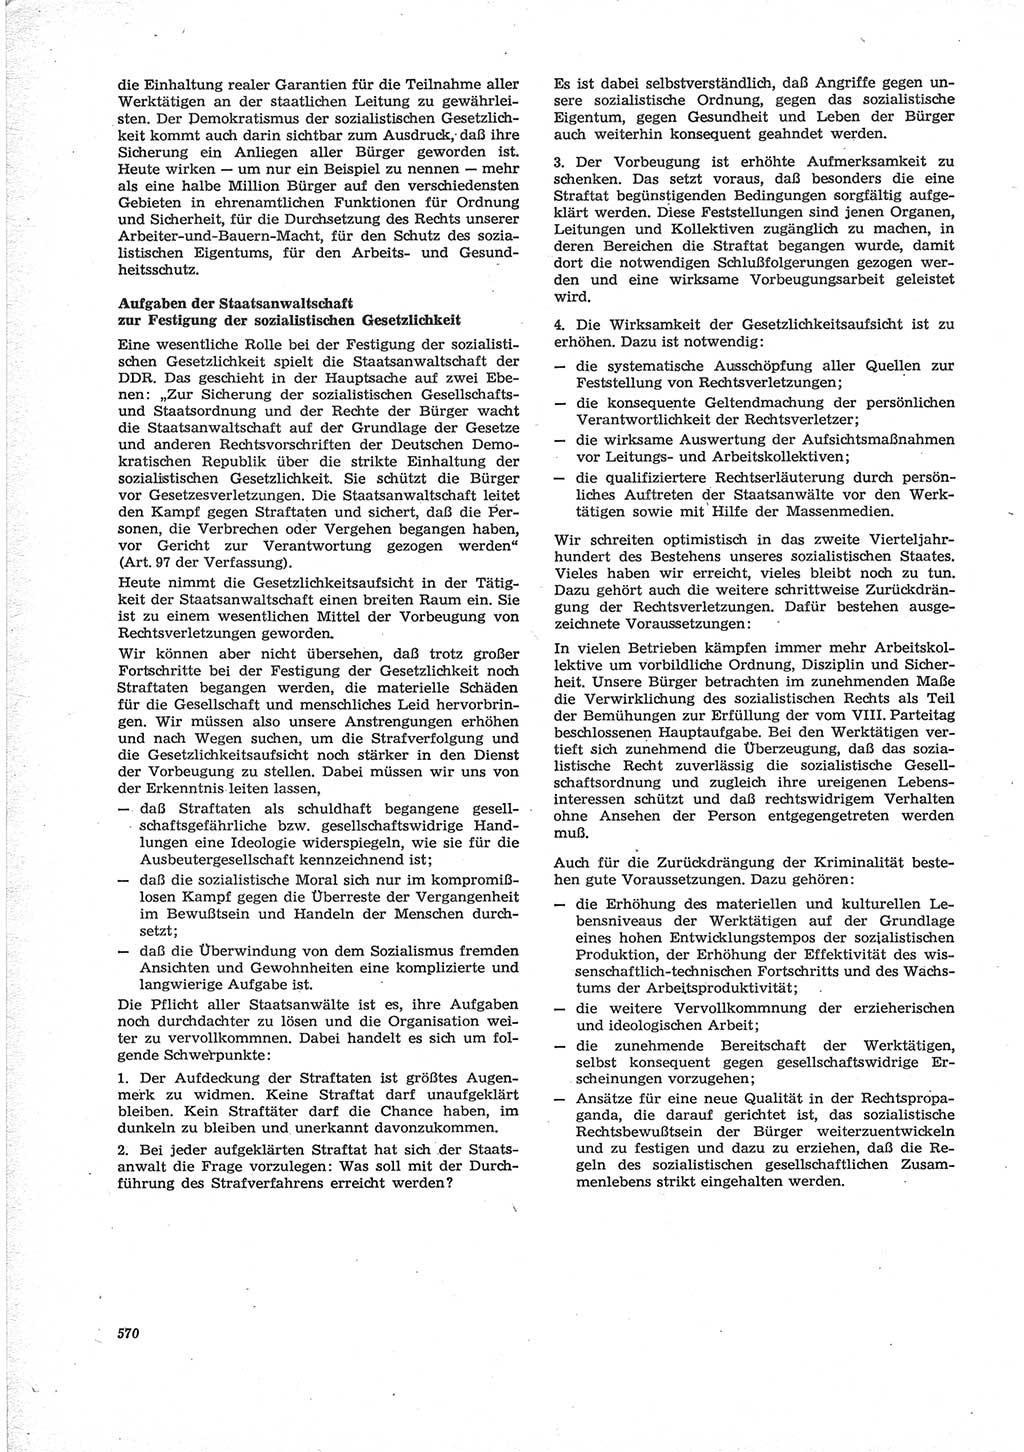 Neue Justiz (NJ), Zeitschrift für Recht und Rechtswissenschaft [Deutsche Demokratische Republik (DDR)], 28. Jahrgang 1974, Seite 570 (NJ DDR 1974, S. 570)